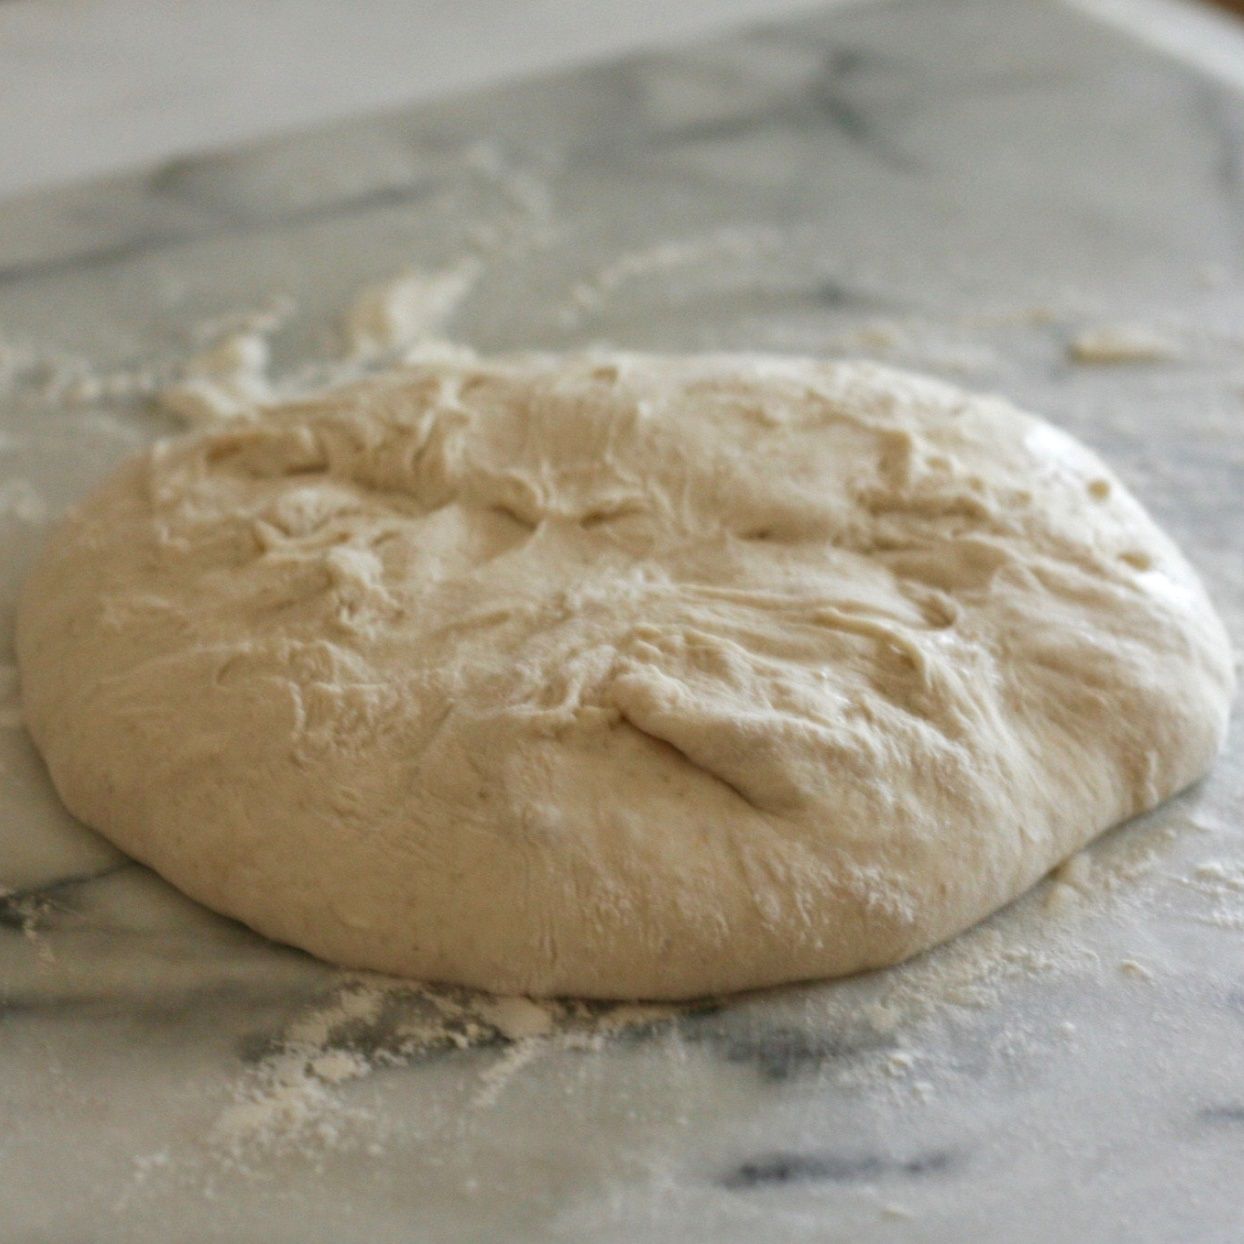 sourdough bread dough on floured countertop